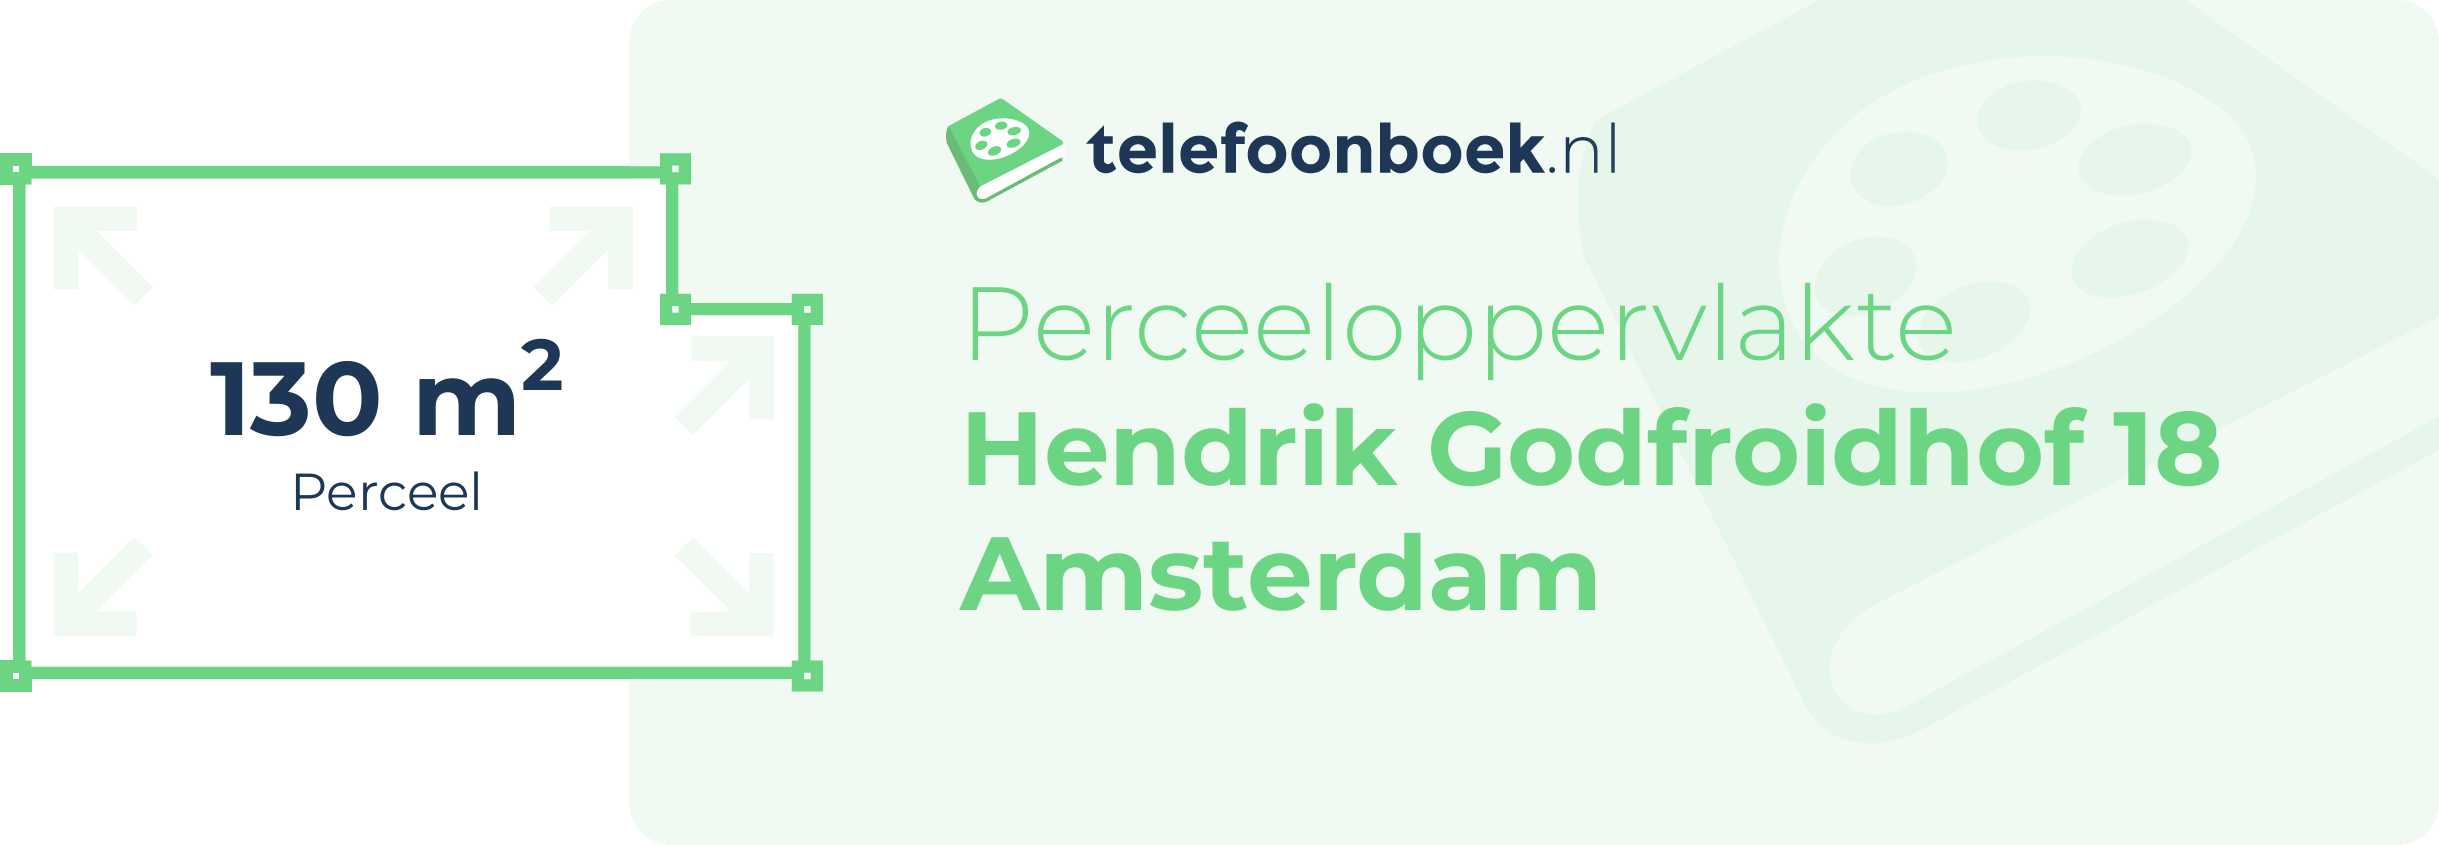 Perceeloppervlakte Hendrik Godfroidhof 18 Amsterdam